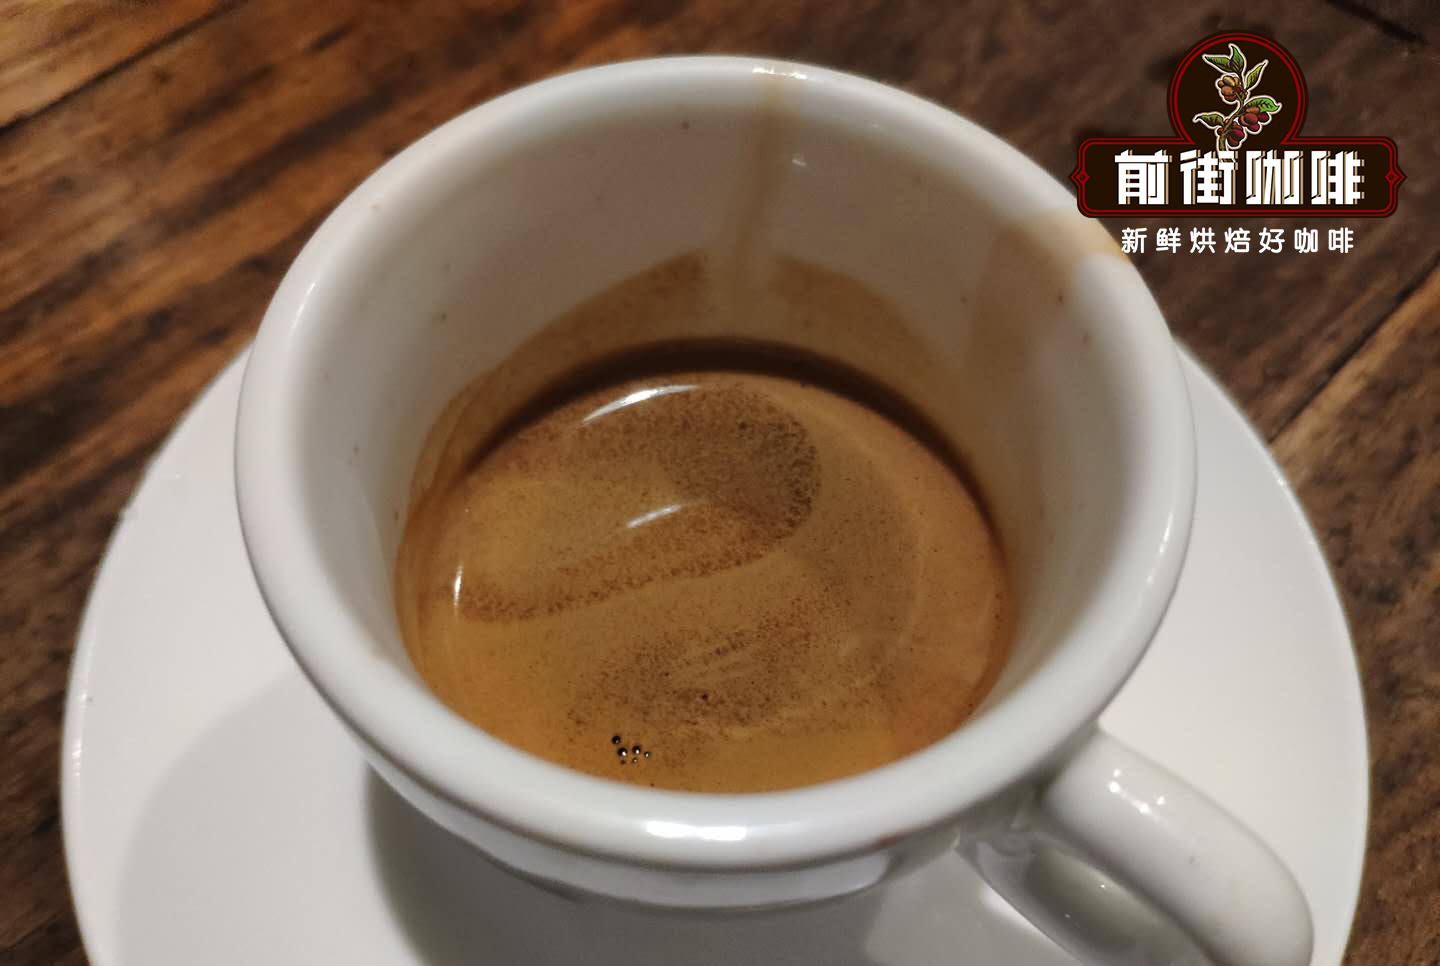 如何在家制作美式咖啡?美式咖啡和濃縮咖啡哪個的味道更好喝